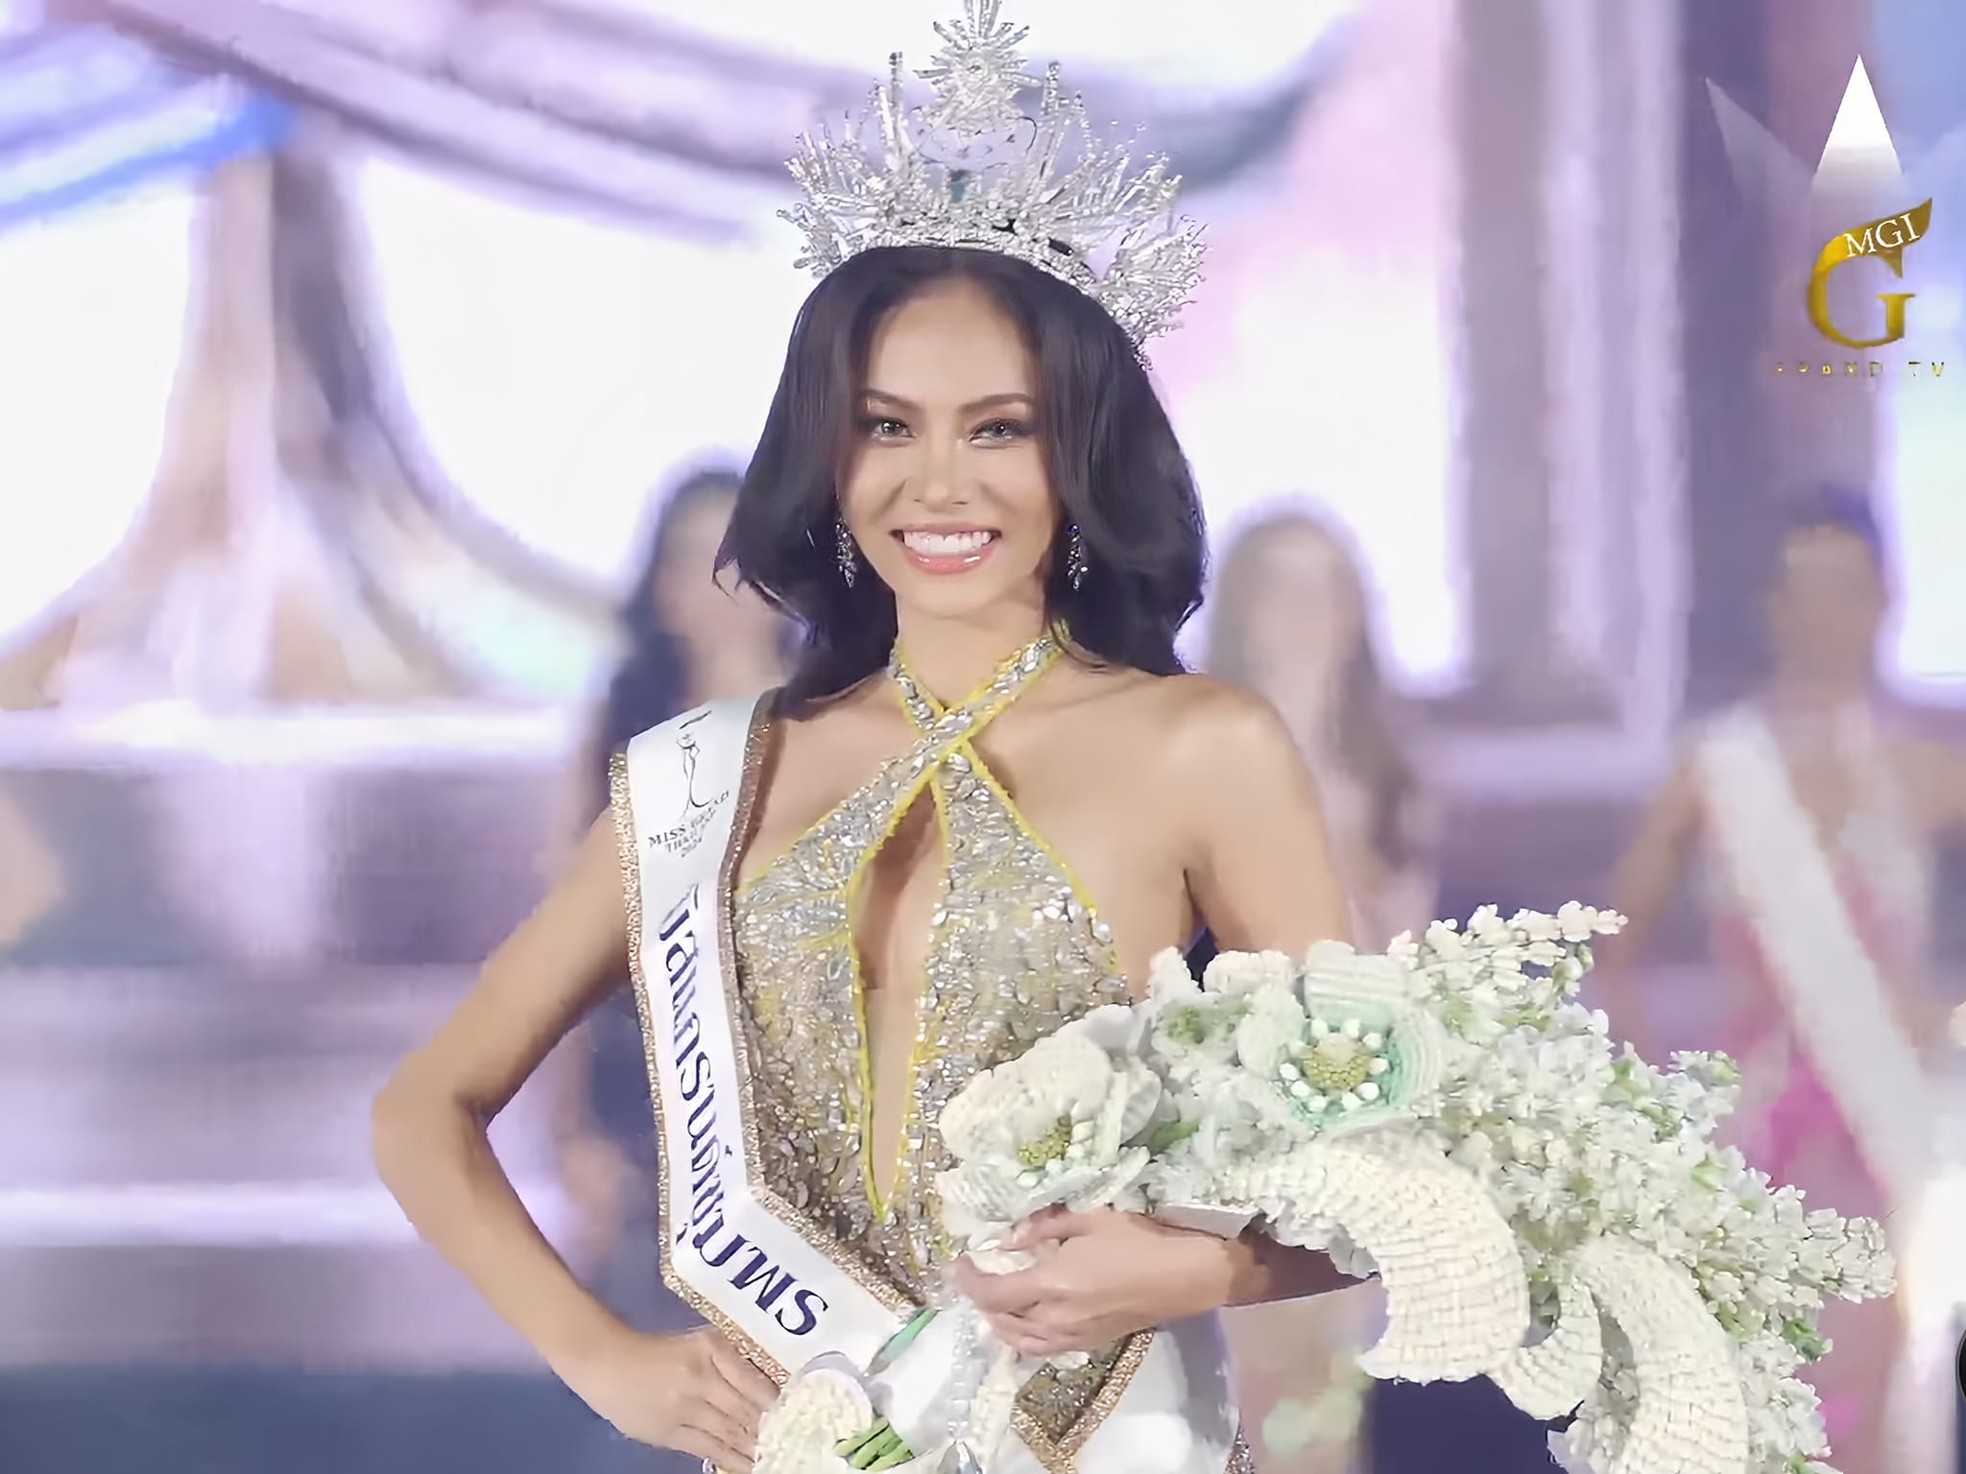 Nhan sắc người đẹp kế nhiệm Hoa hậu Hòa bình Thái Lan - Ảnh 1.